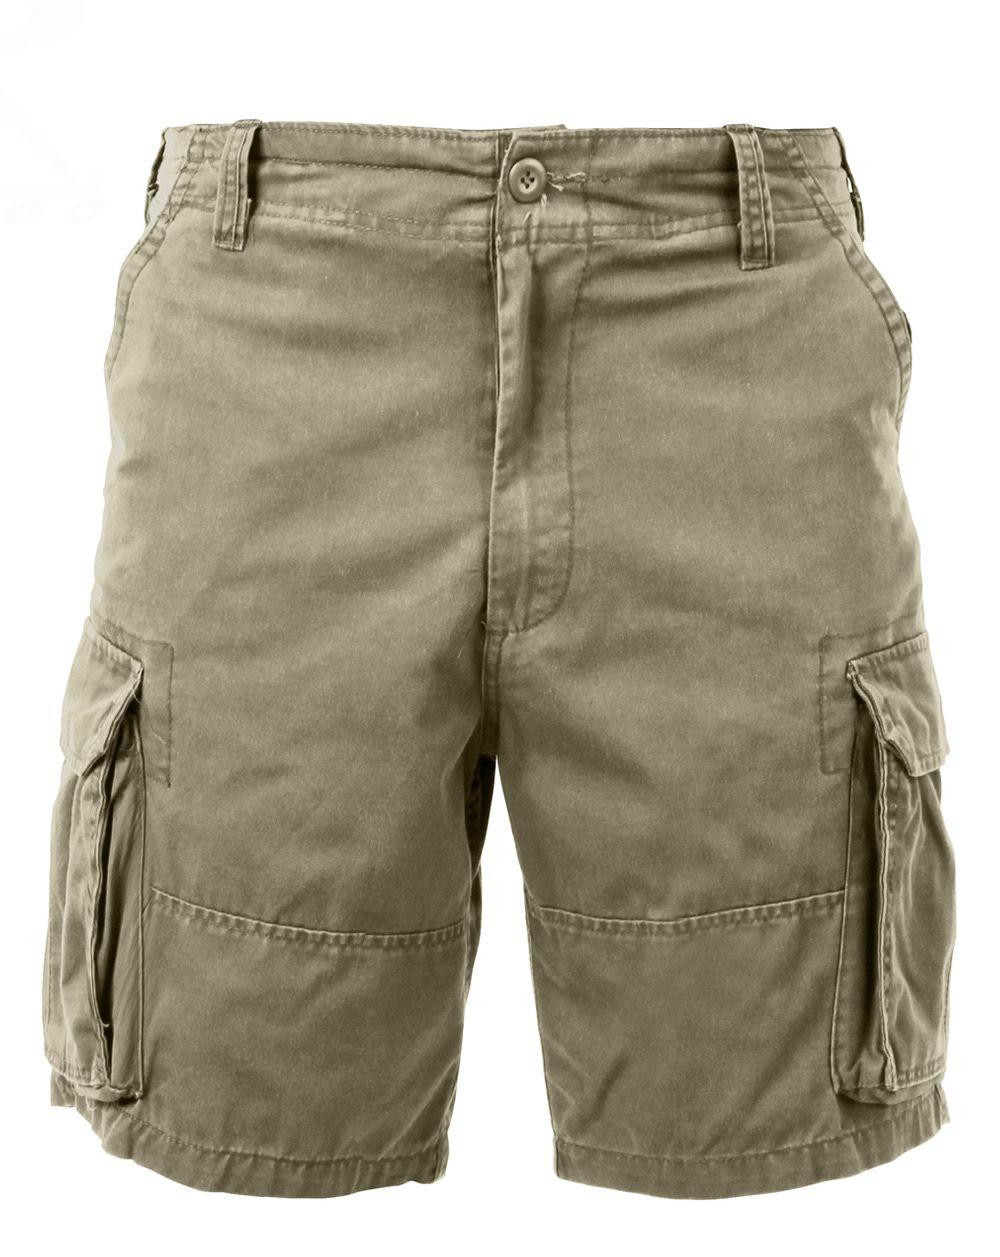 Rothco Cargo shorts (Khaki, L)